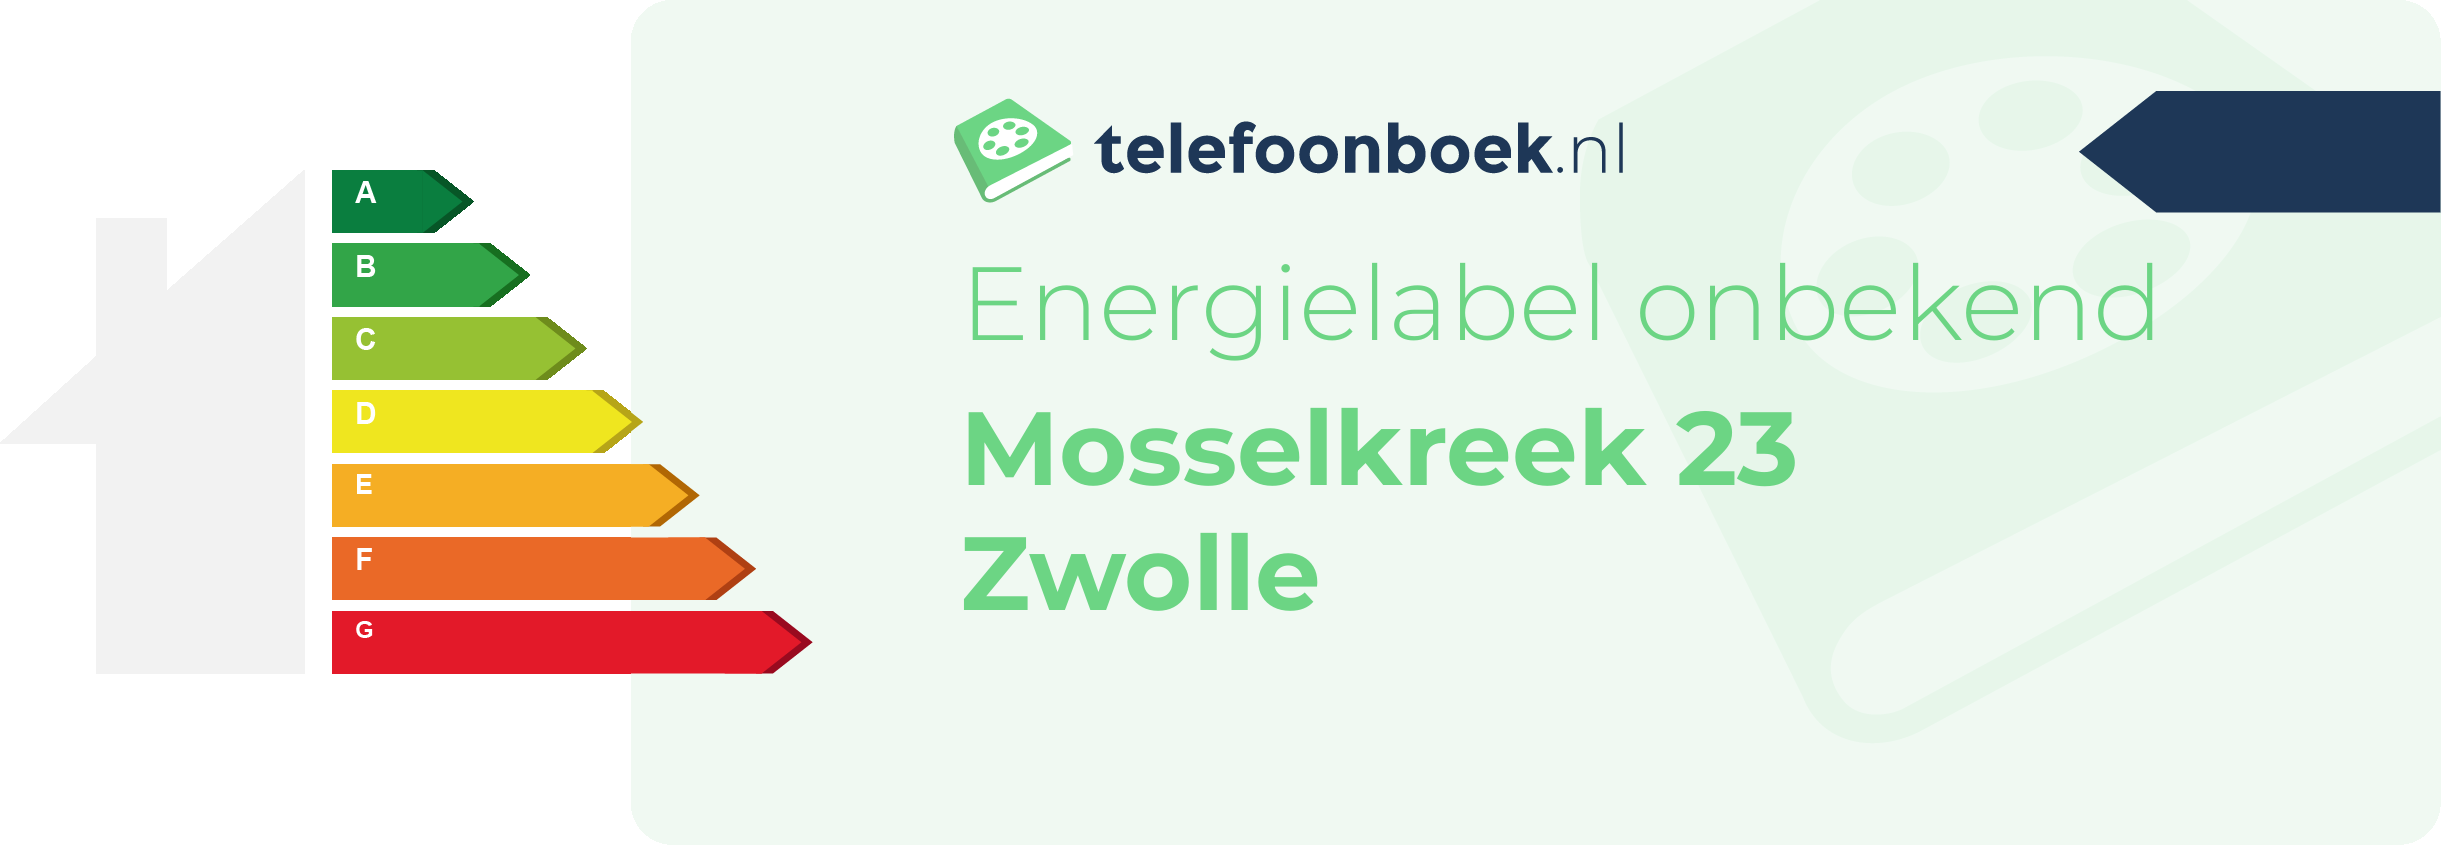 Energielabel Mosselkreek 23 Zwolle